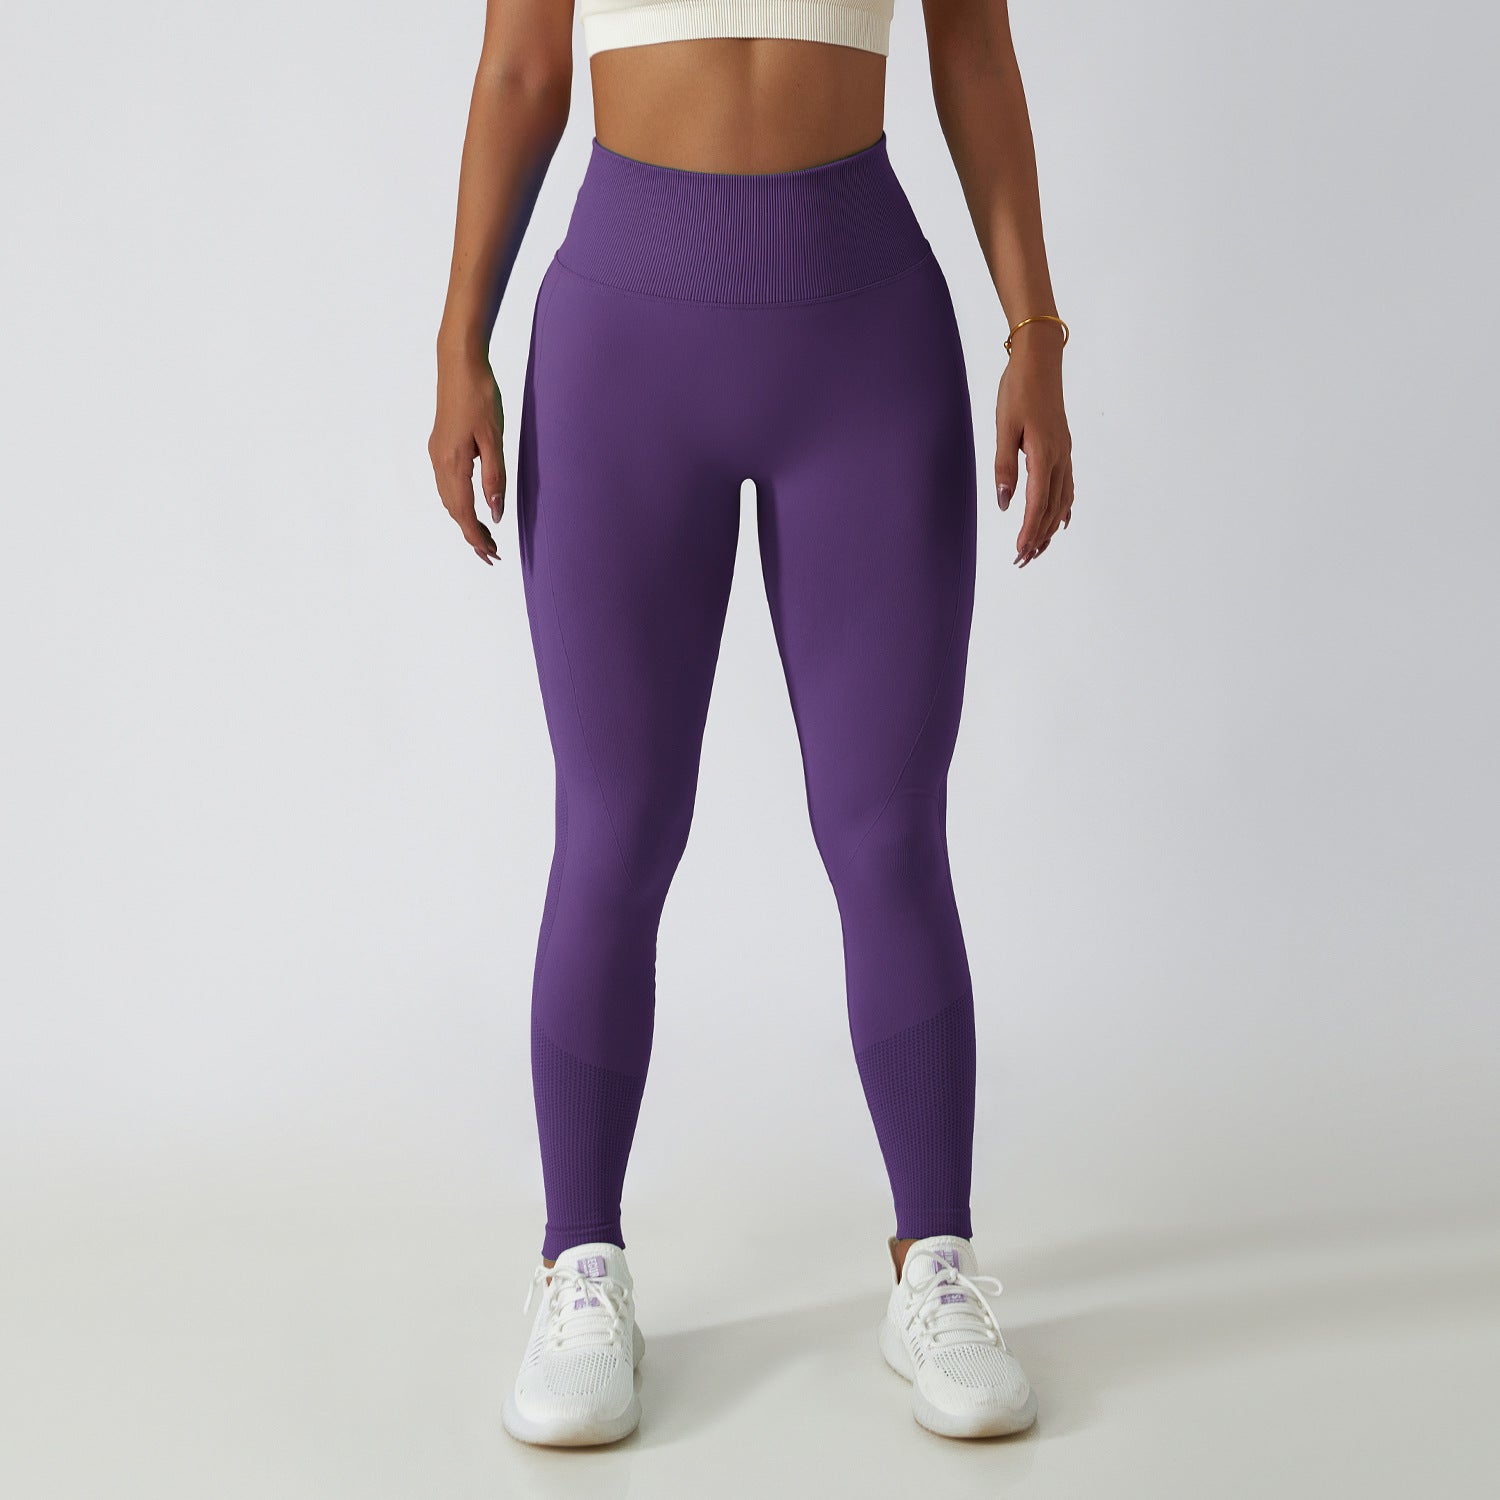 Eine Person trägt unsere Scrunch Leggings in der Farbe Purple. Die Leggings sind aus elastischem, atmungsaktivem Material und haben einen Scrunch-Effekt am Gesäß, der für eine feminine Silhouette sorgt. Ideal für jedes Workout.